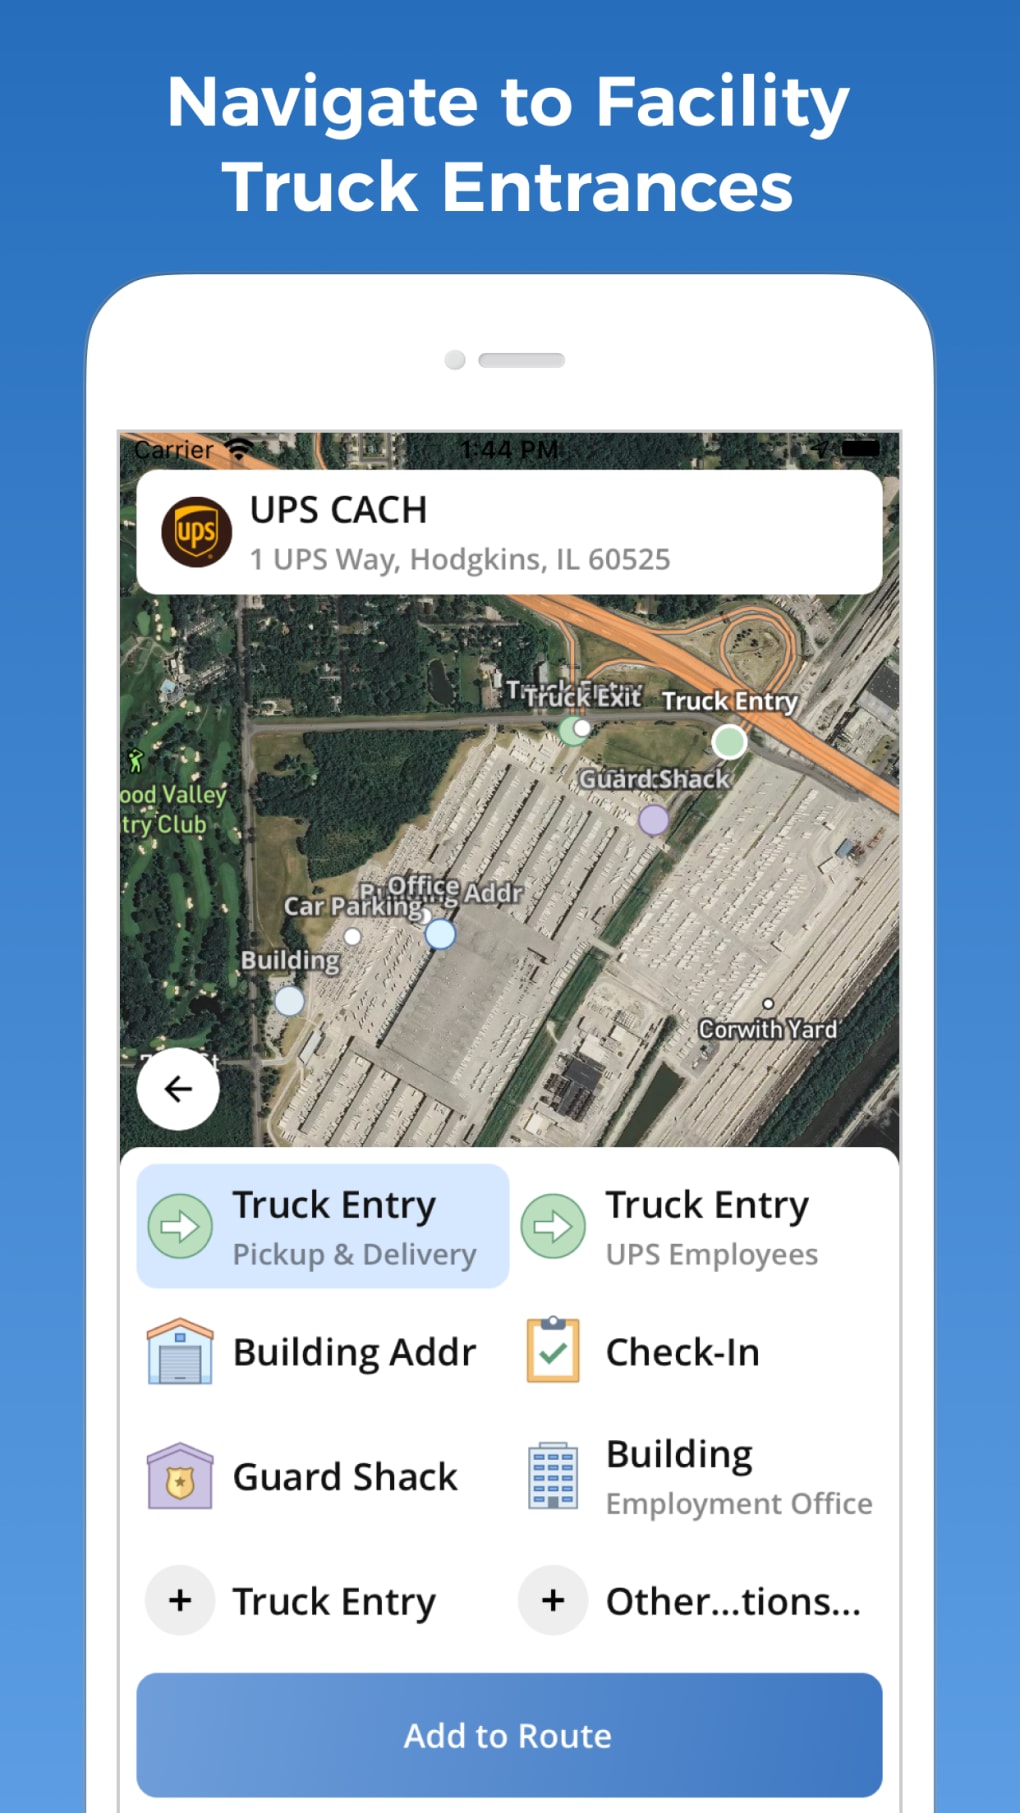 NAVTRUCK: GPS diseñado para camiones disponible en Apple IOS y Android